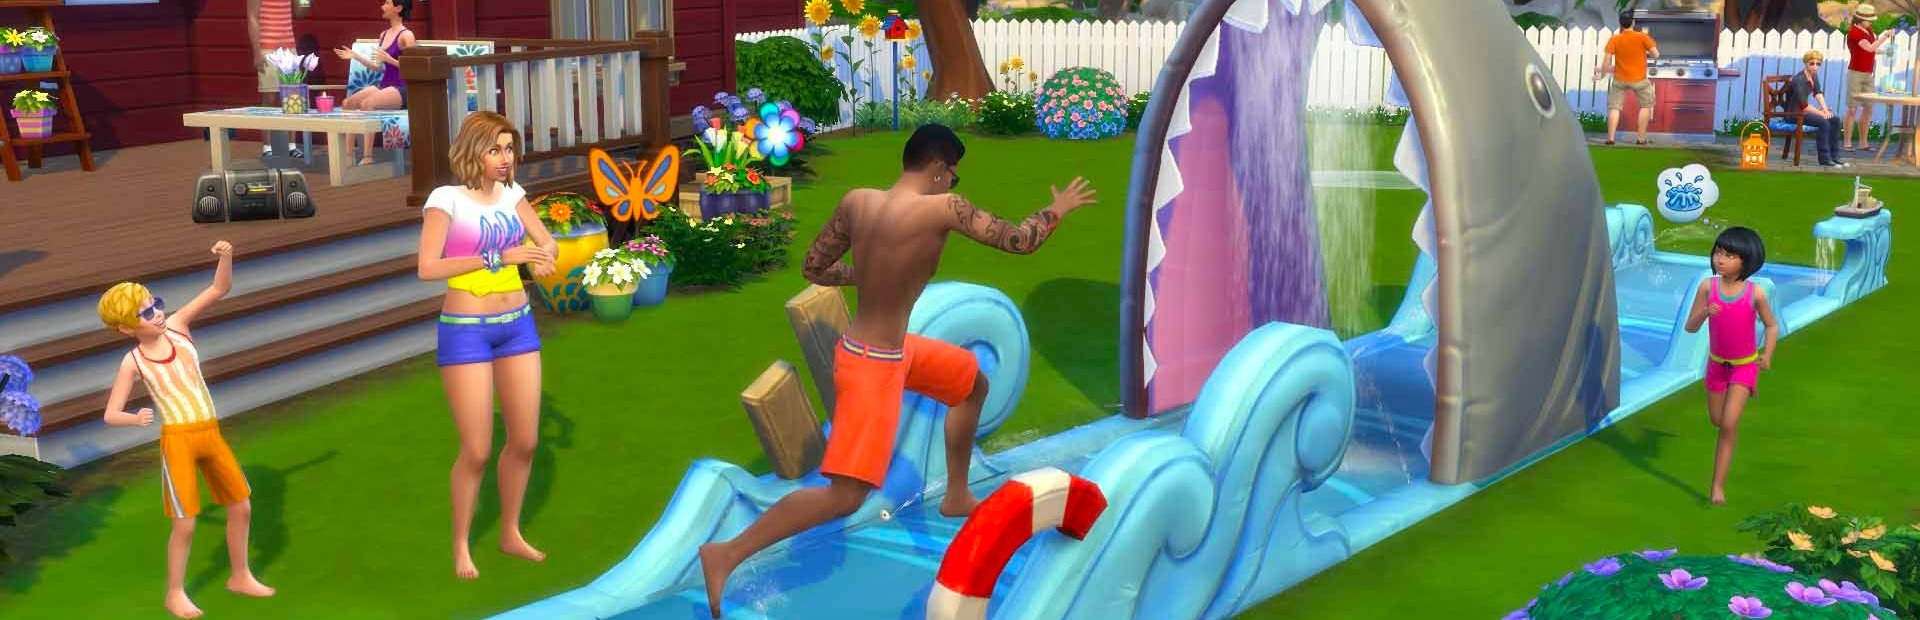 The Sims 4 Backyard Stuff PS4